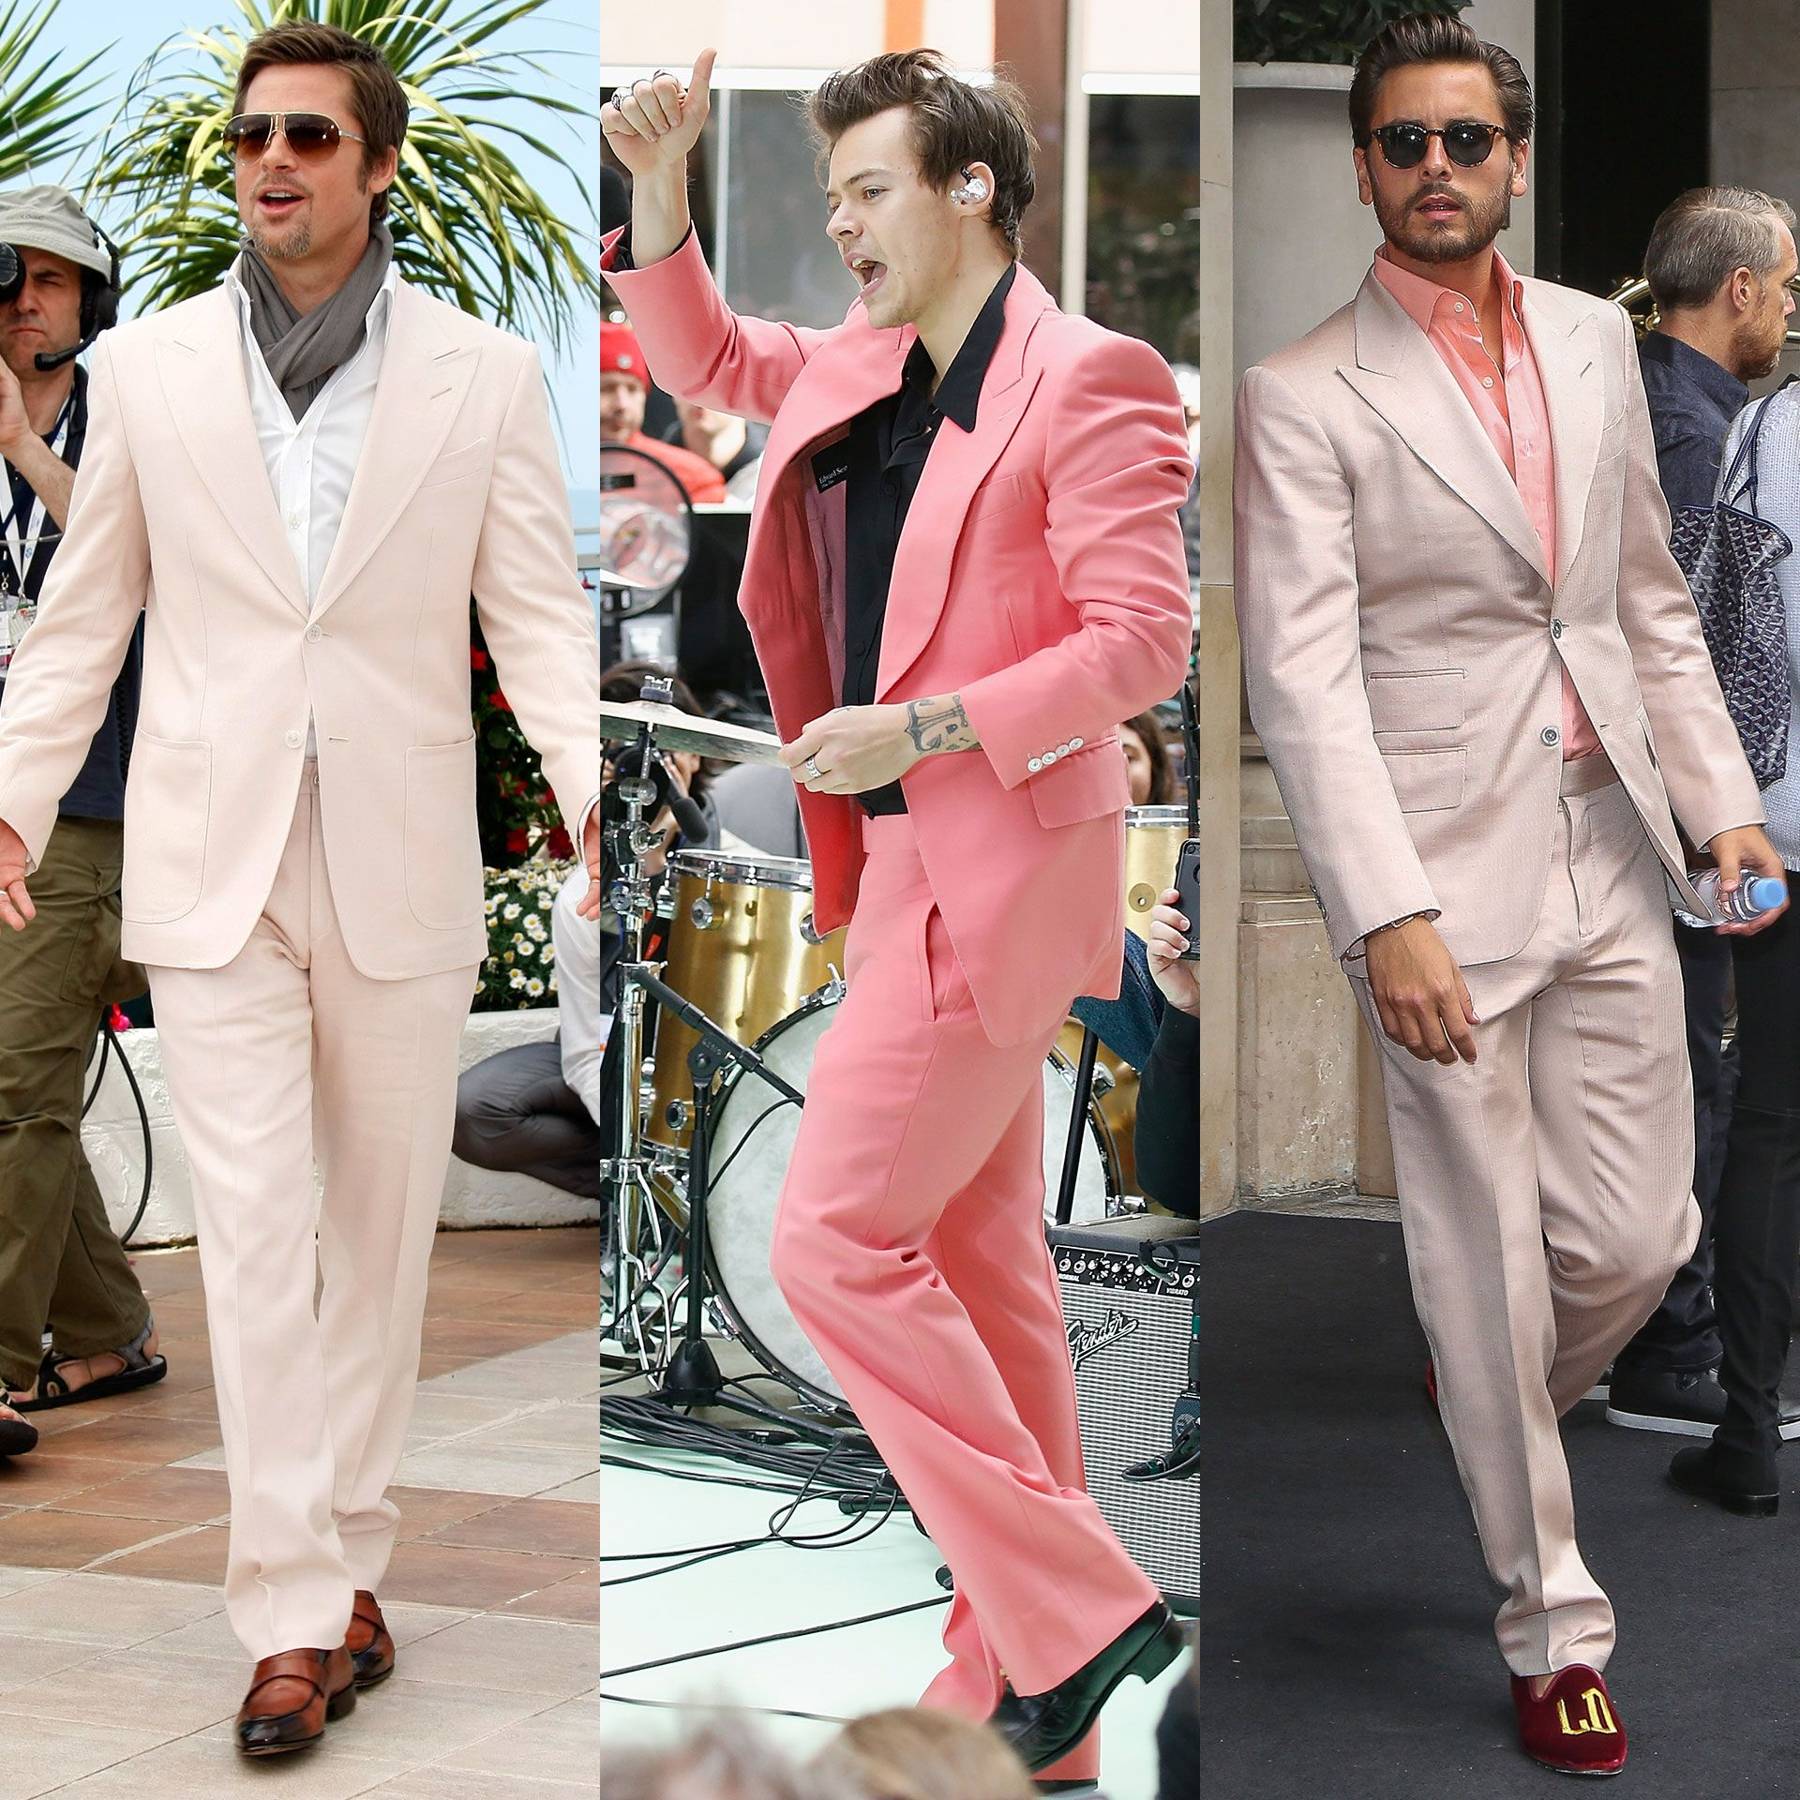 Men Wearing Pink Suits \u0026 Looking 